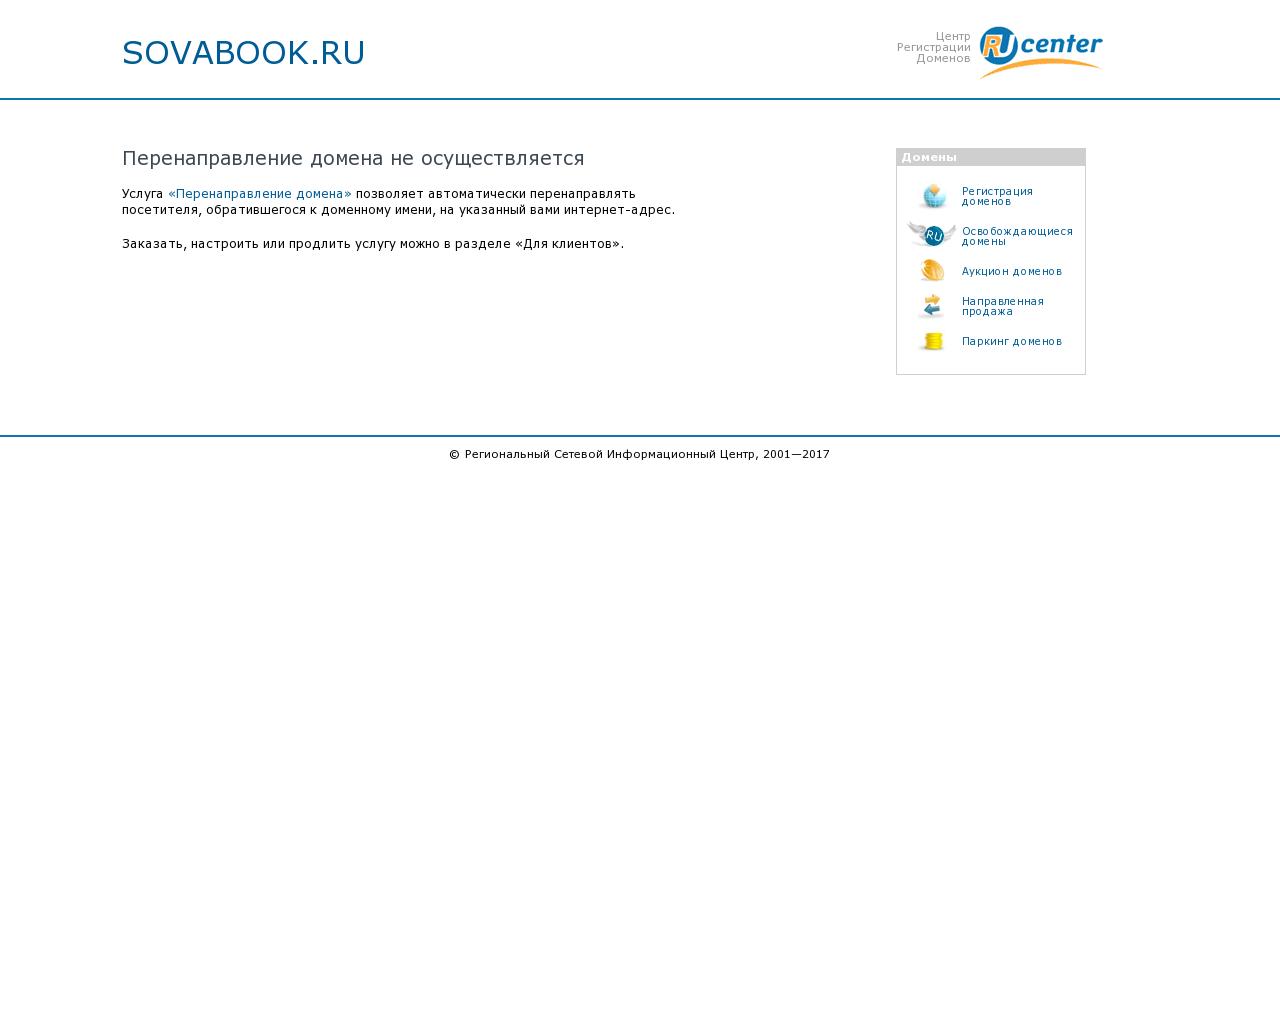 Изображение сайта sovabook.ru в разрешении 1280x1024